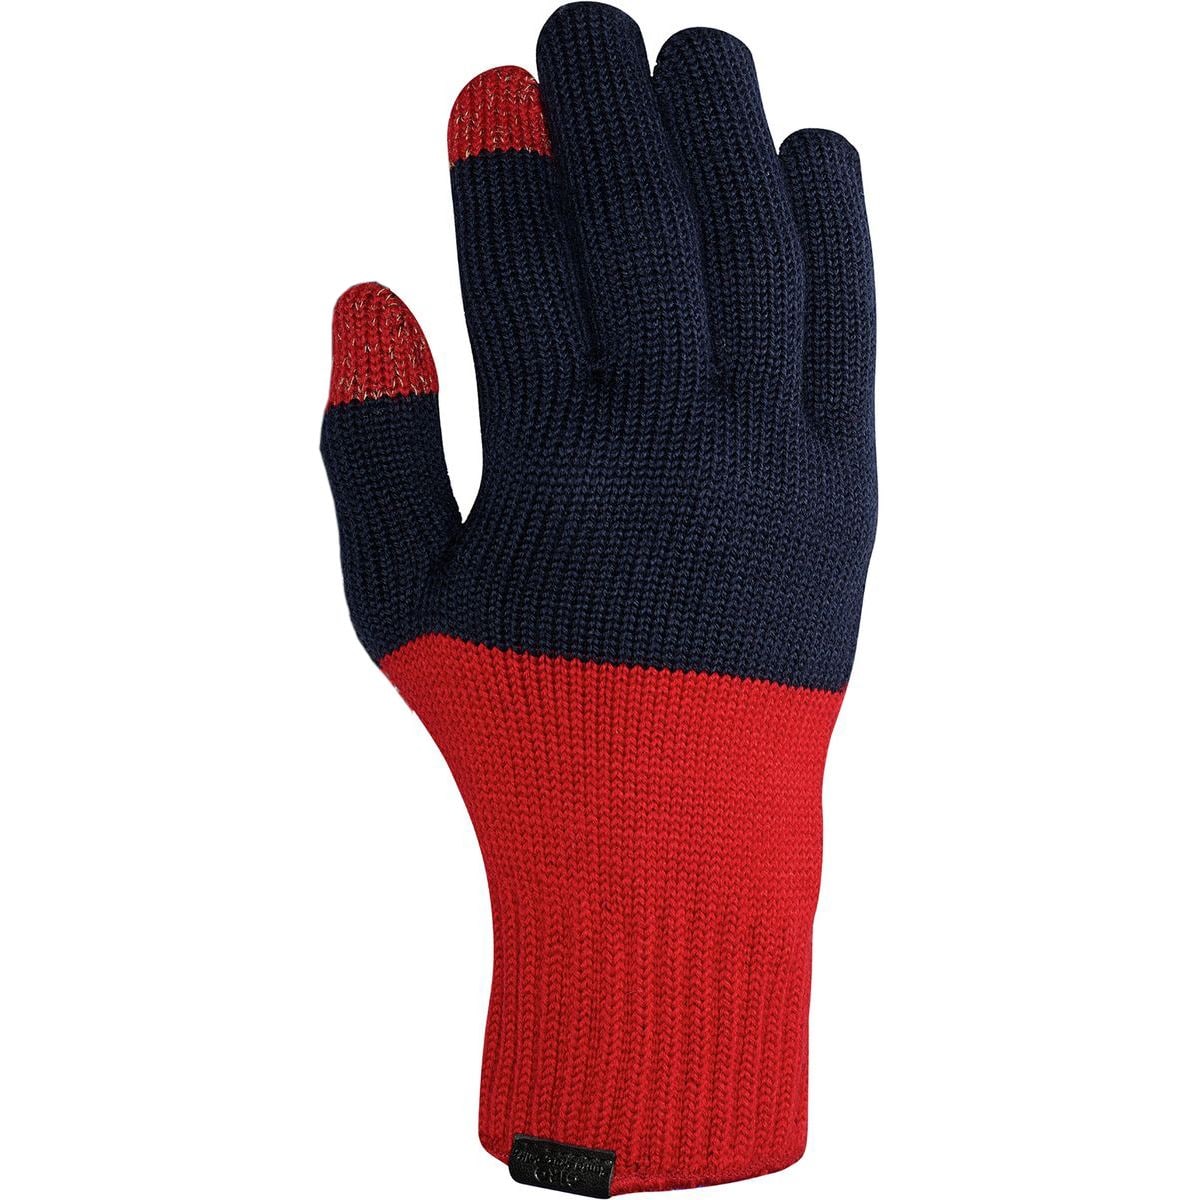 Giro Knit Merino Wool Glove - Men's